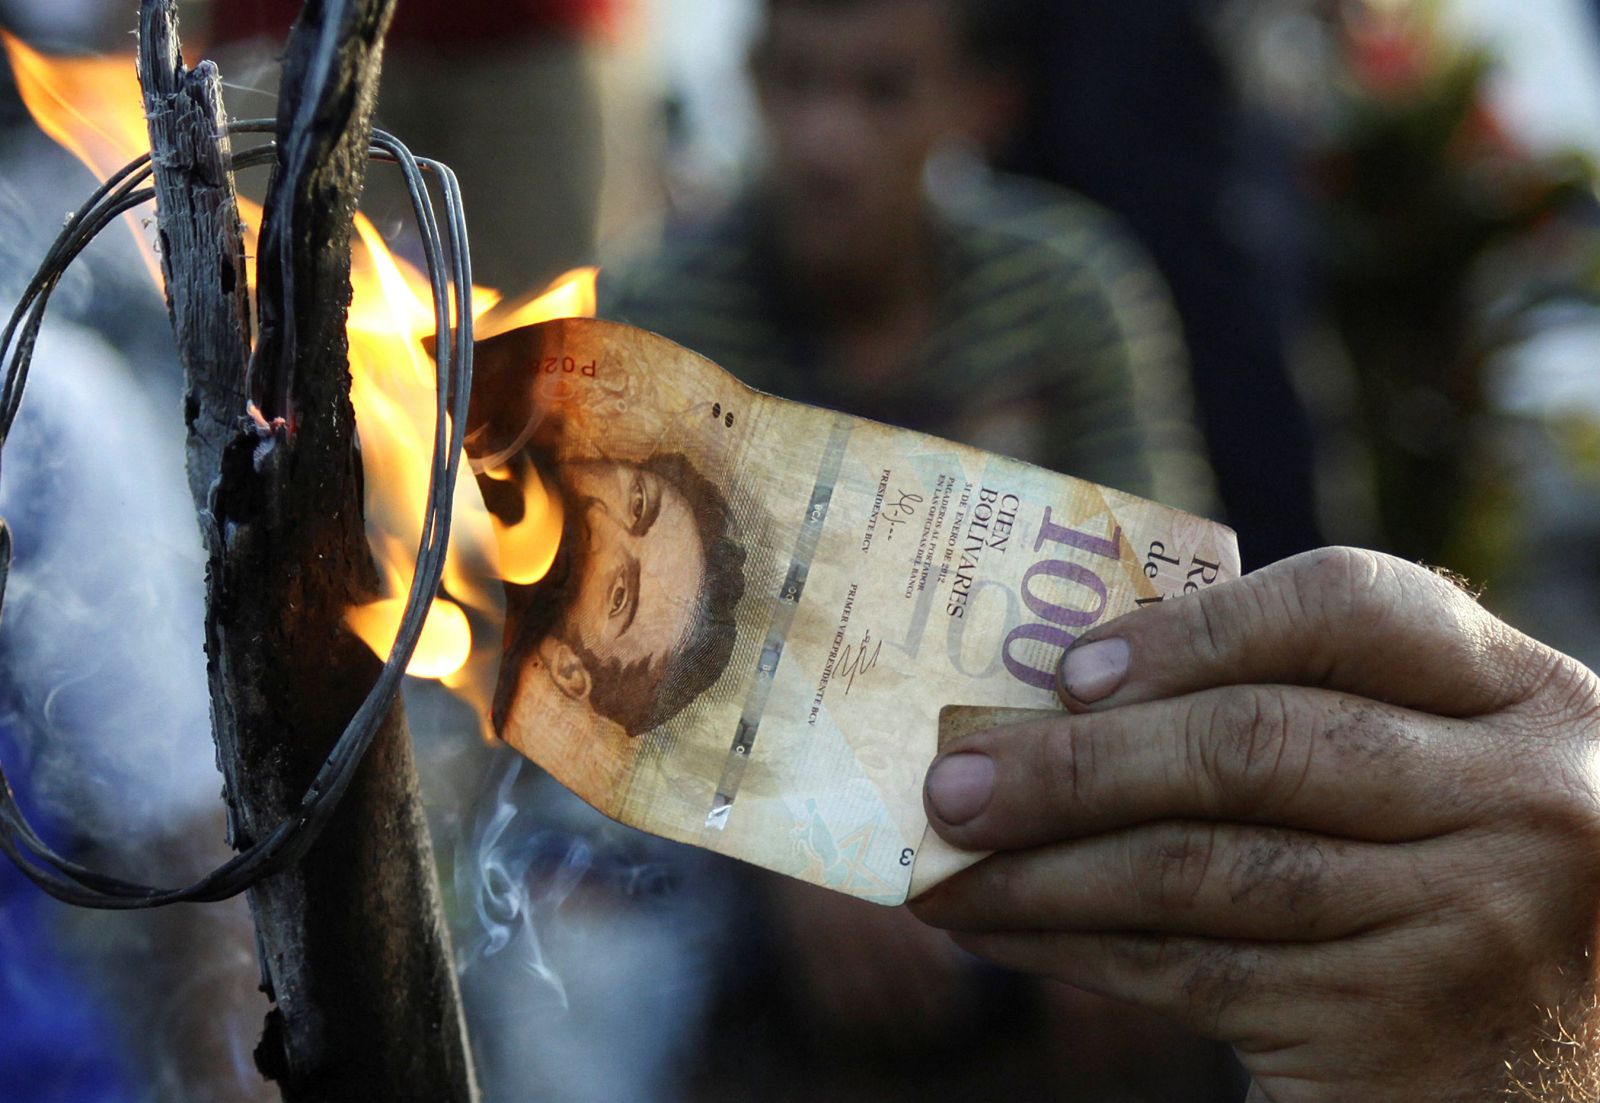 Caos total en Venezuela ante falta de billetes para comprar 